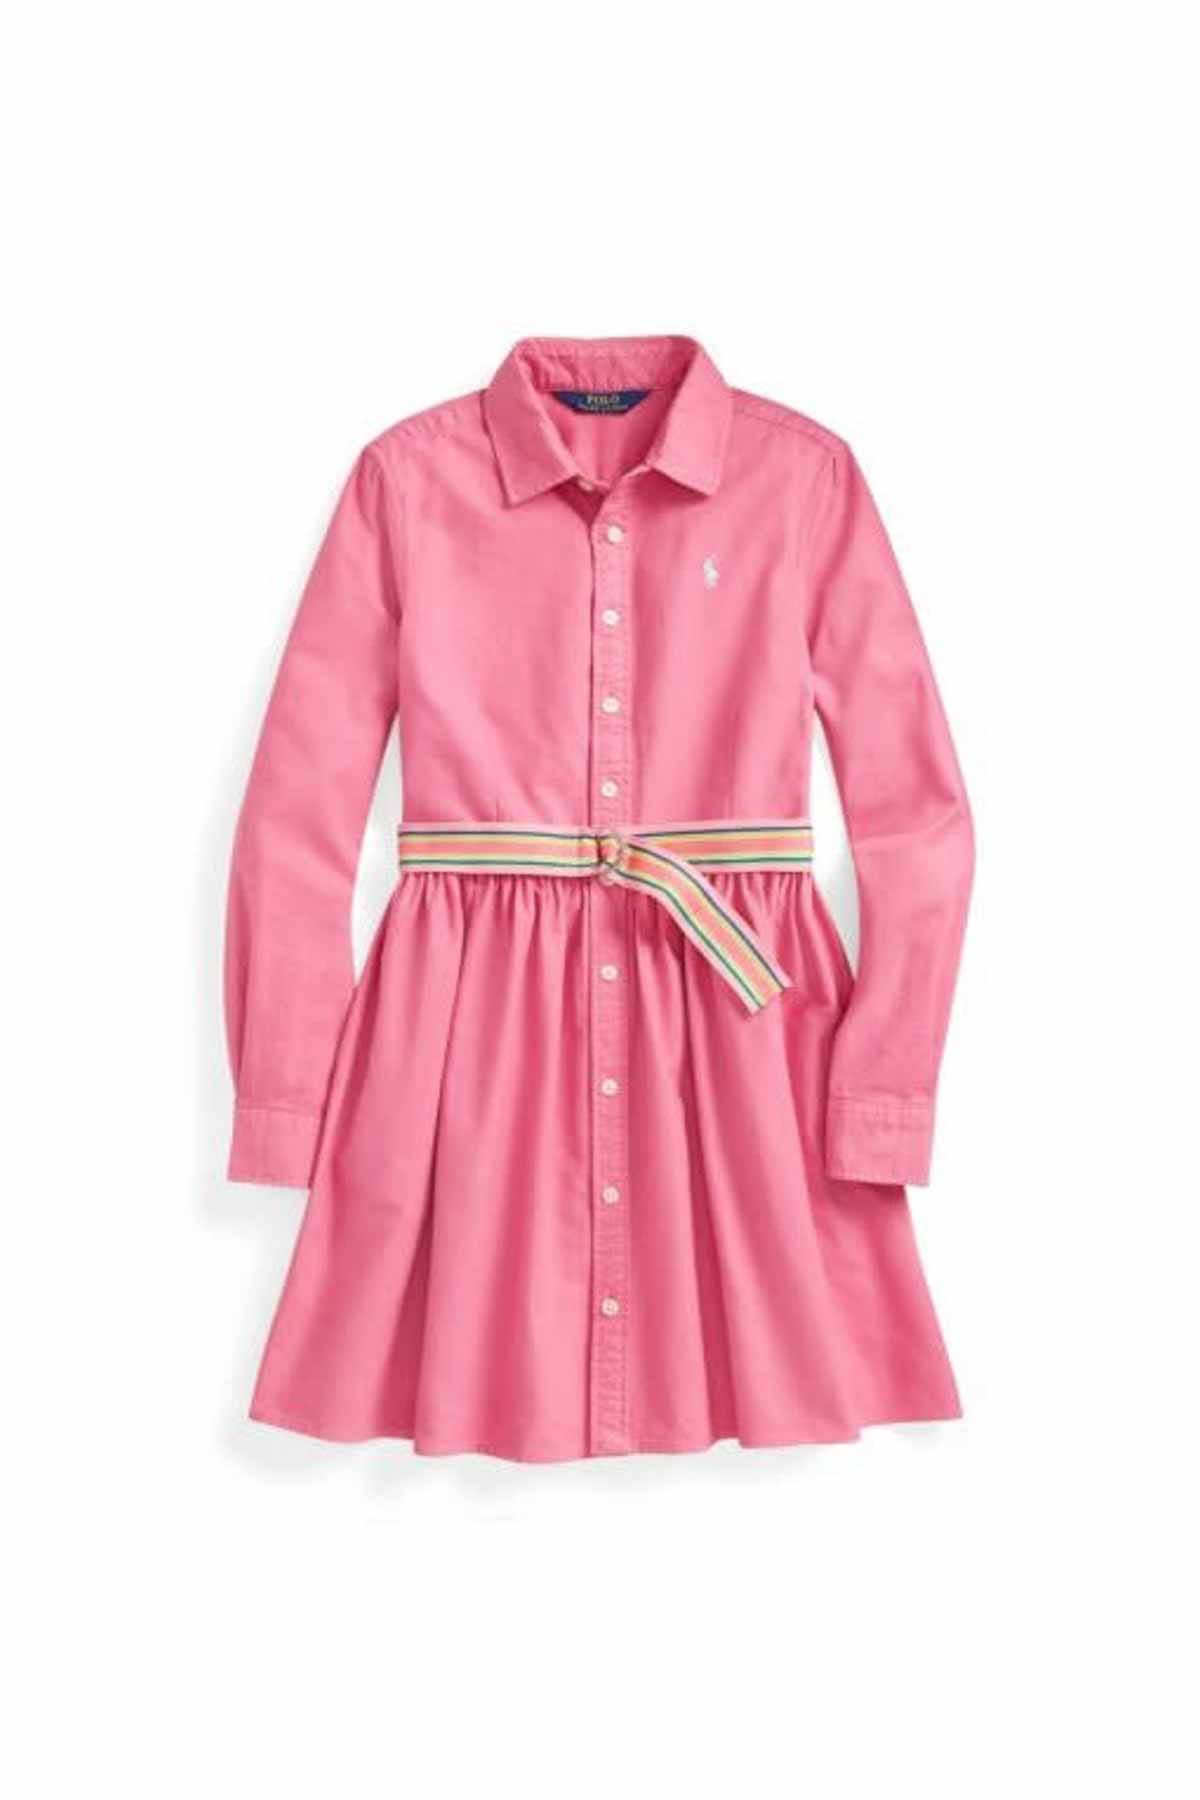 Polo Ralph Lauren 5-6 Yaş Kız Çocuk Kemerli Gömlek Elbise-Libas Trendy Fashion Store